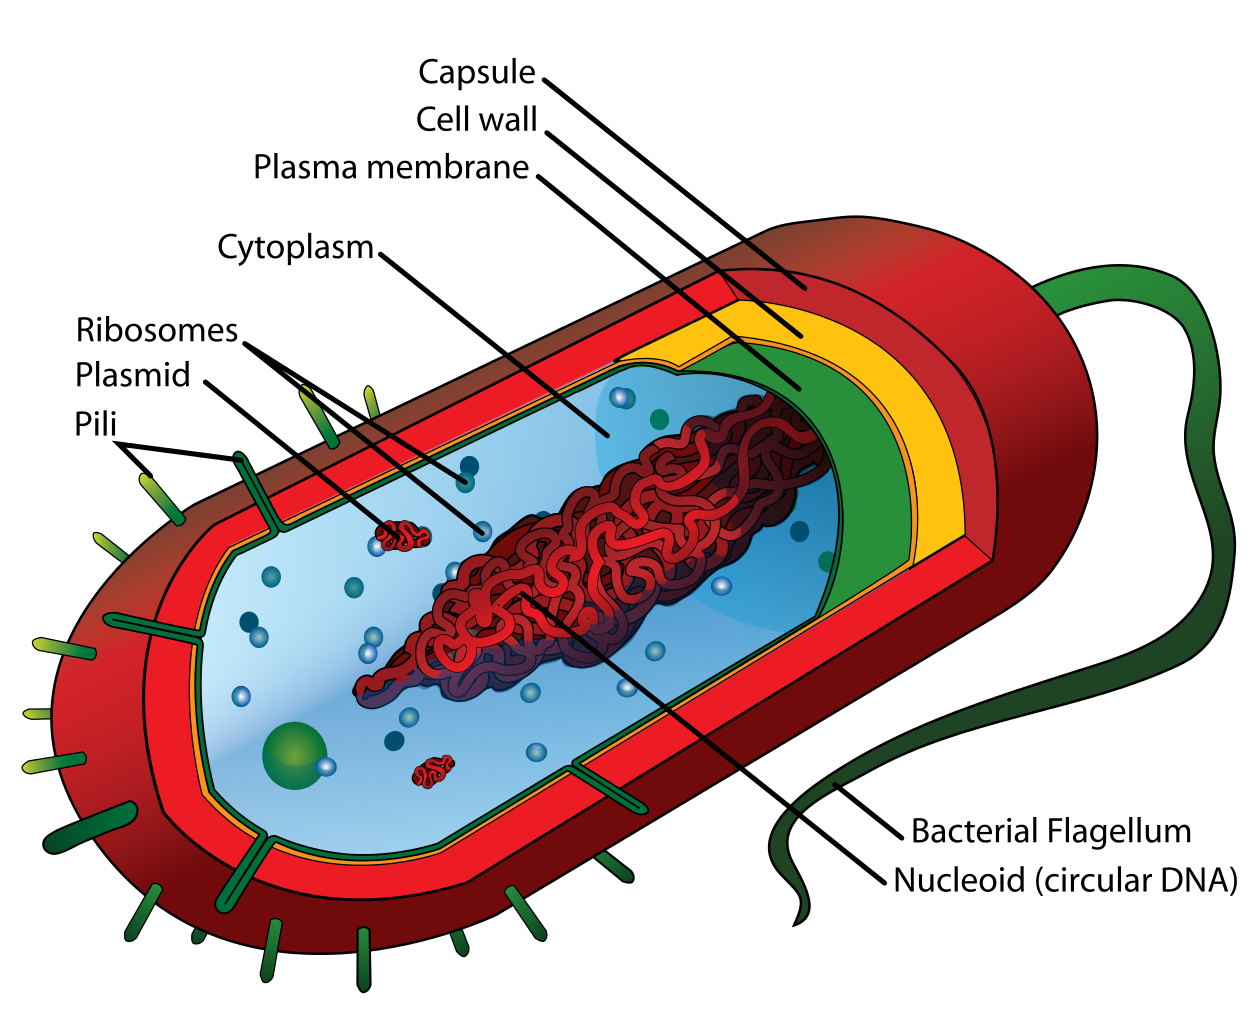 una caricatura de una bacteria. el ADN parece espagueti en el centro del citoplasma.